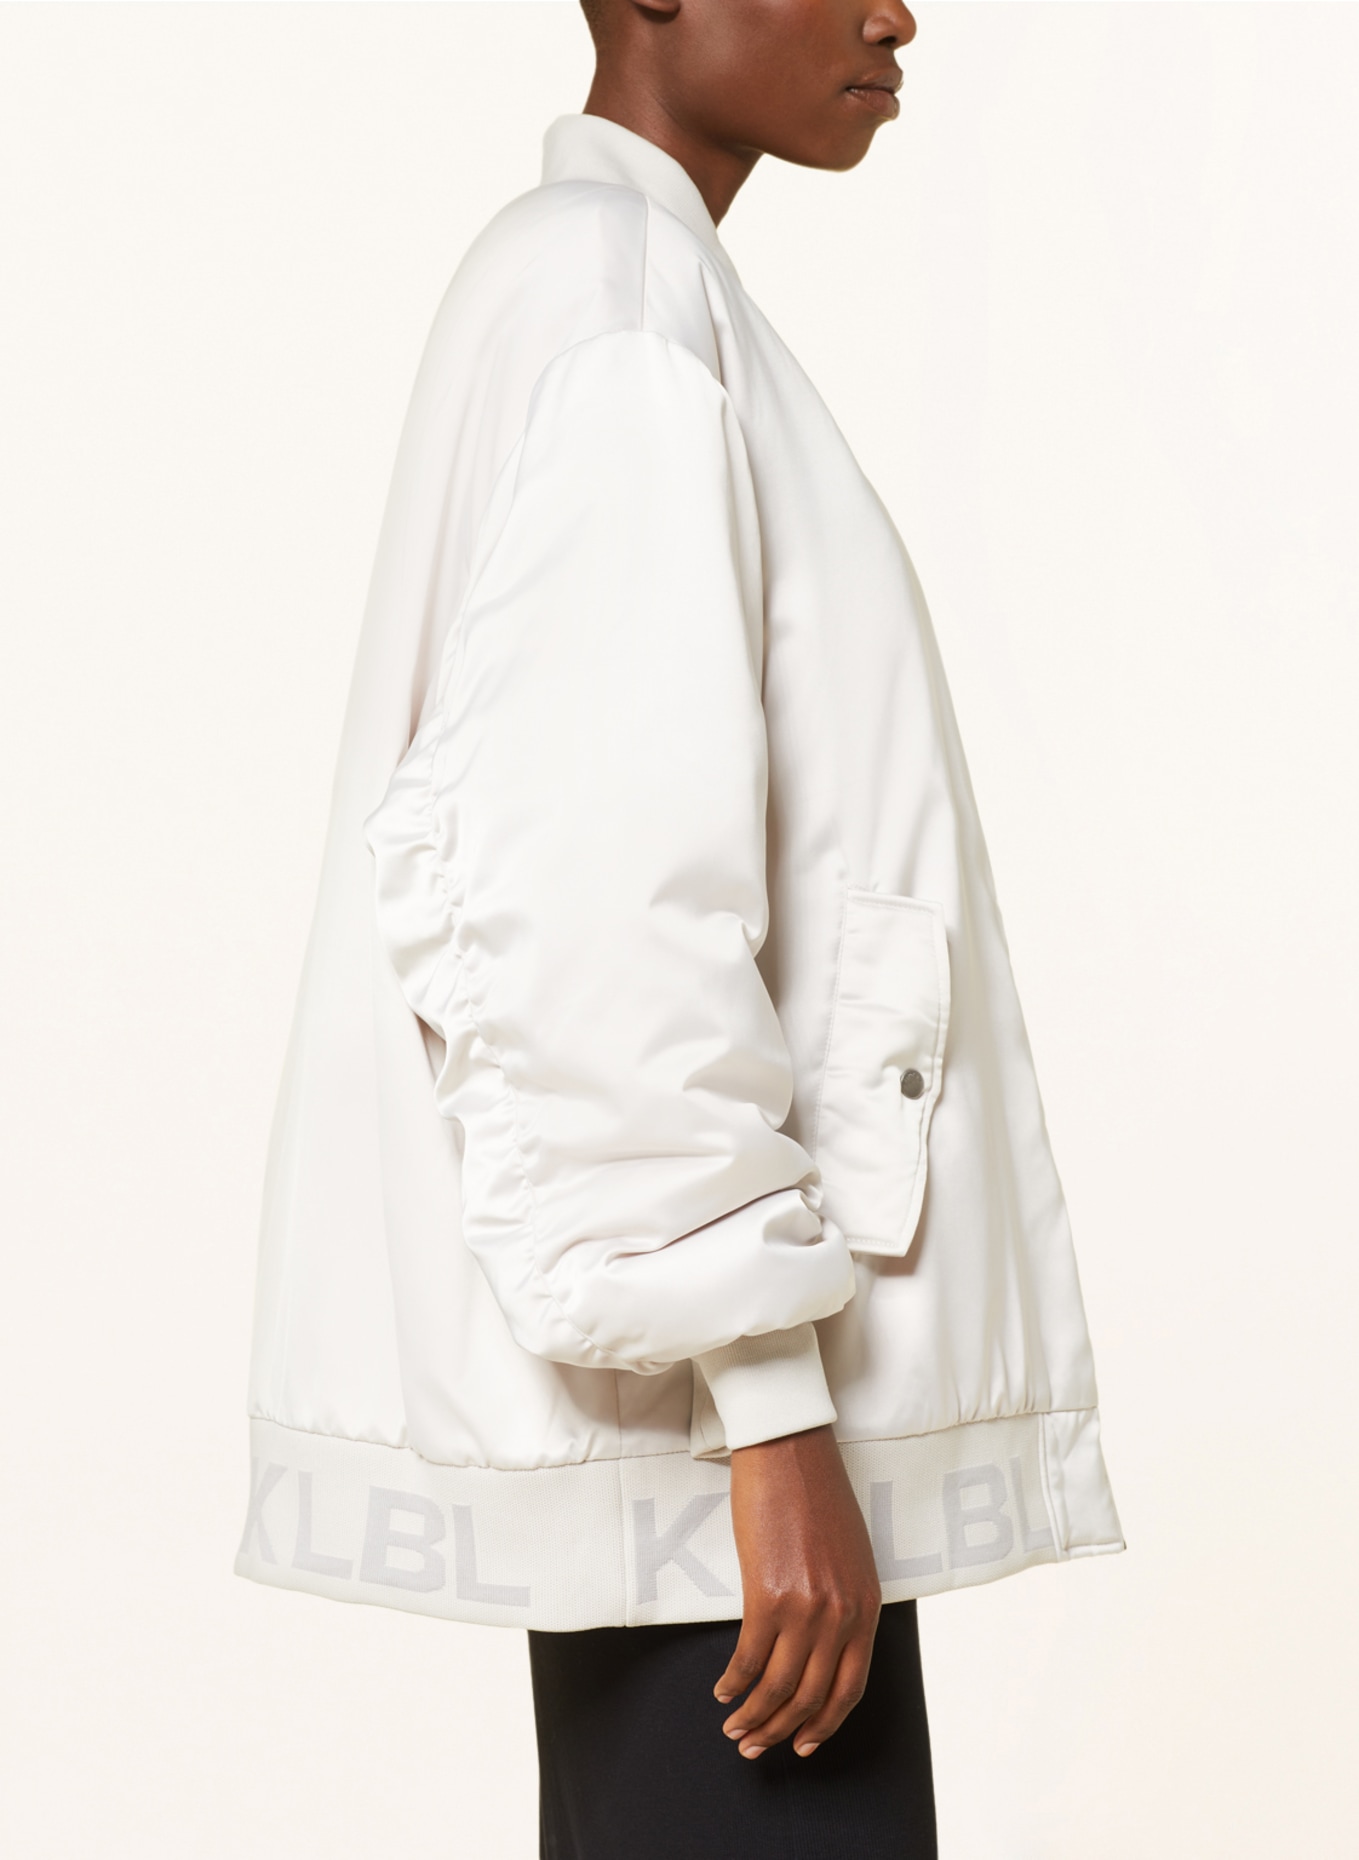 KARO KAUER Bluzon oversize, Kolor: JASNOCZARY (Obrazek 4)